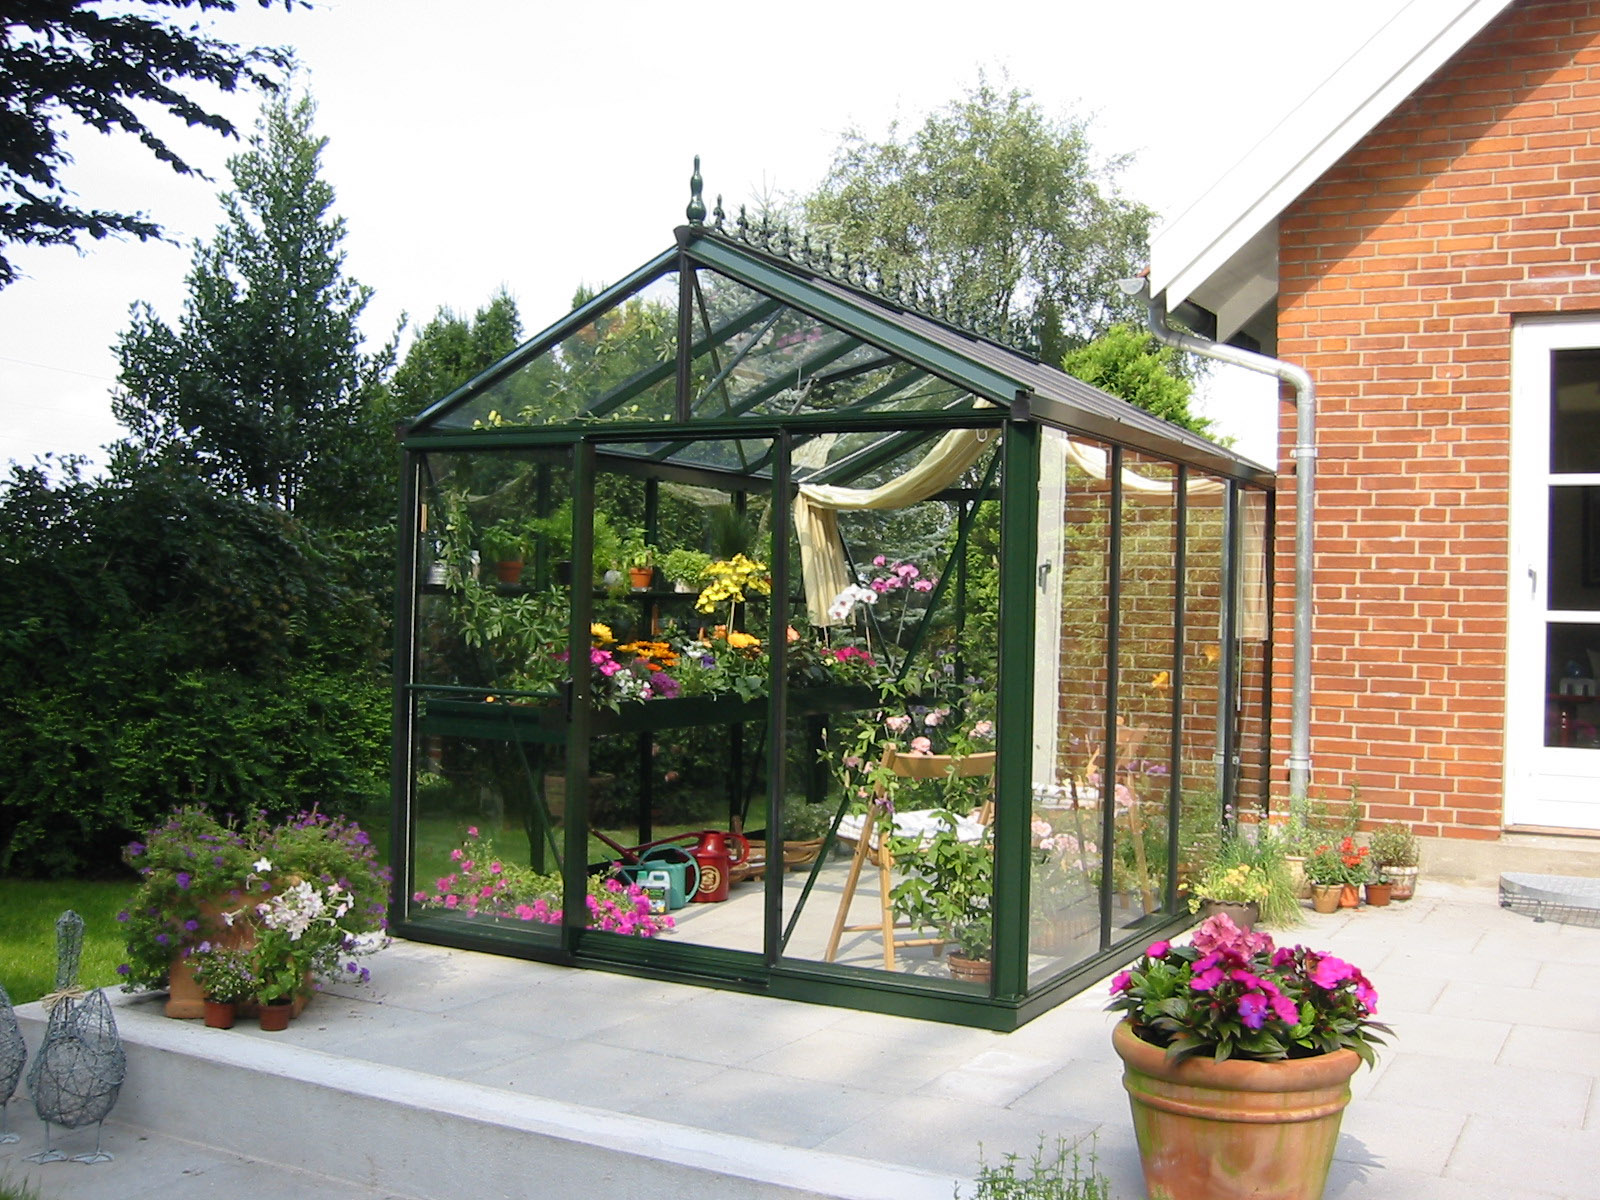 EXACO Trading: Premier Greenhouses for the Garden - Eye of ...